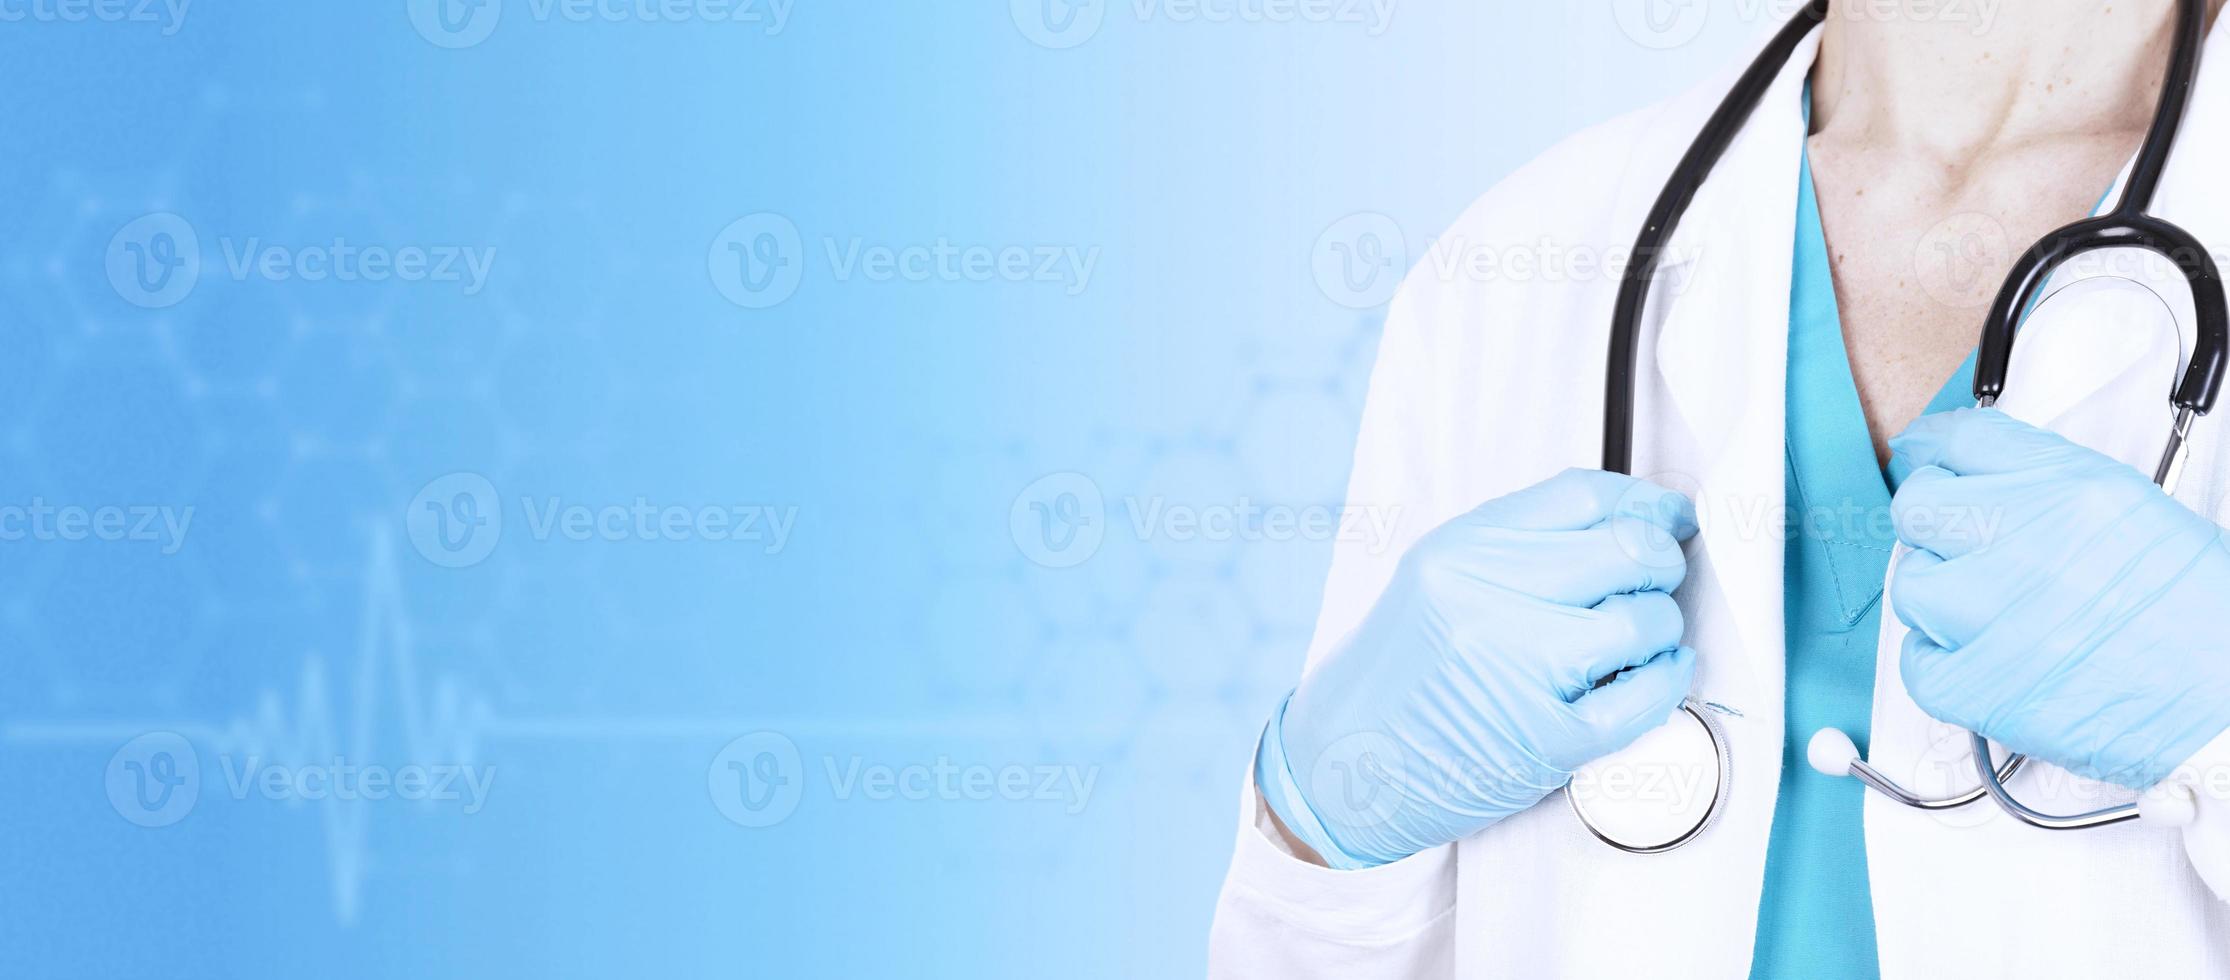 dottoressa in abiti medici con uno stetoscopio in mano su uno sfondo blu medico. vista laterale. bandiera sanitaria. copia spazio. foto